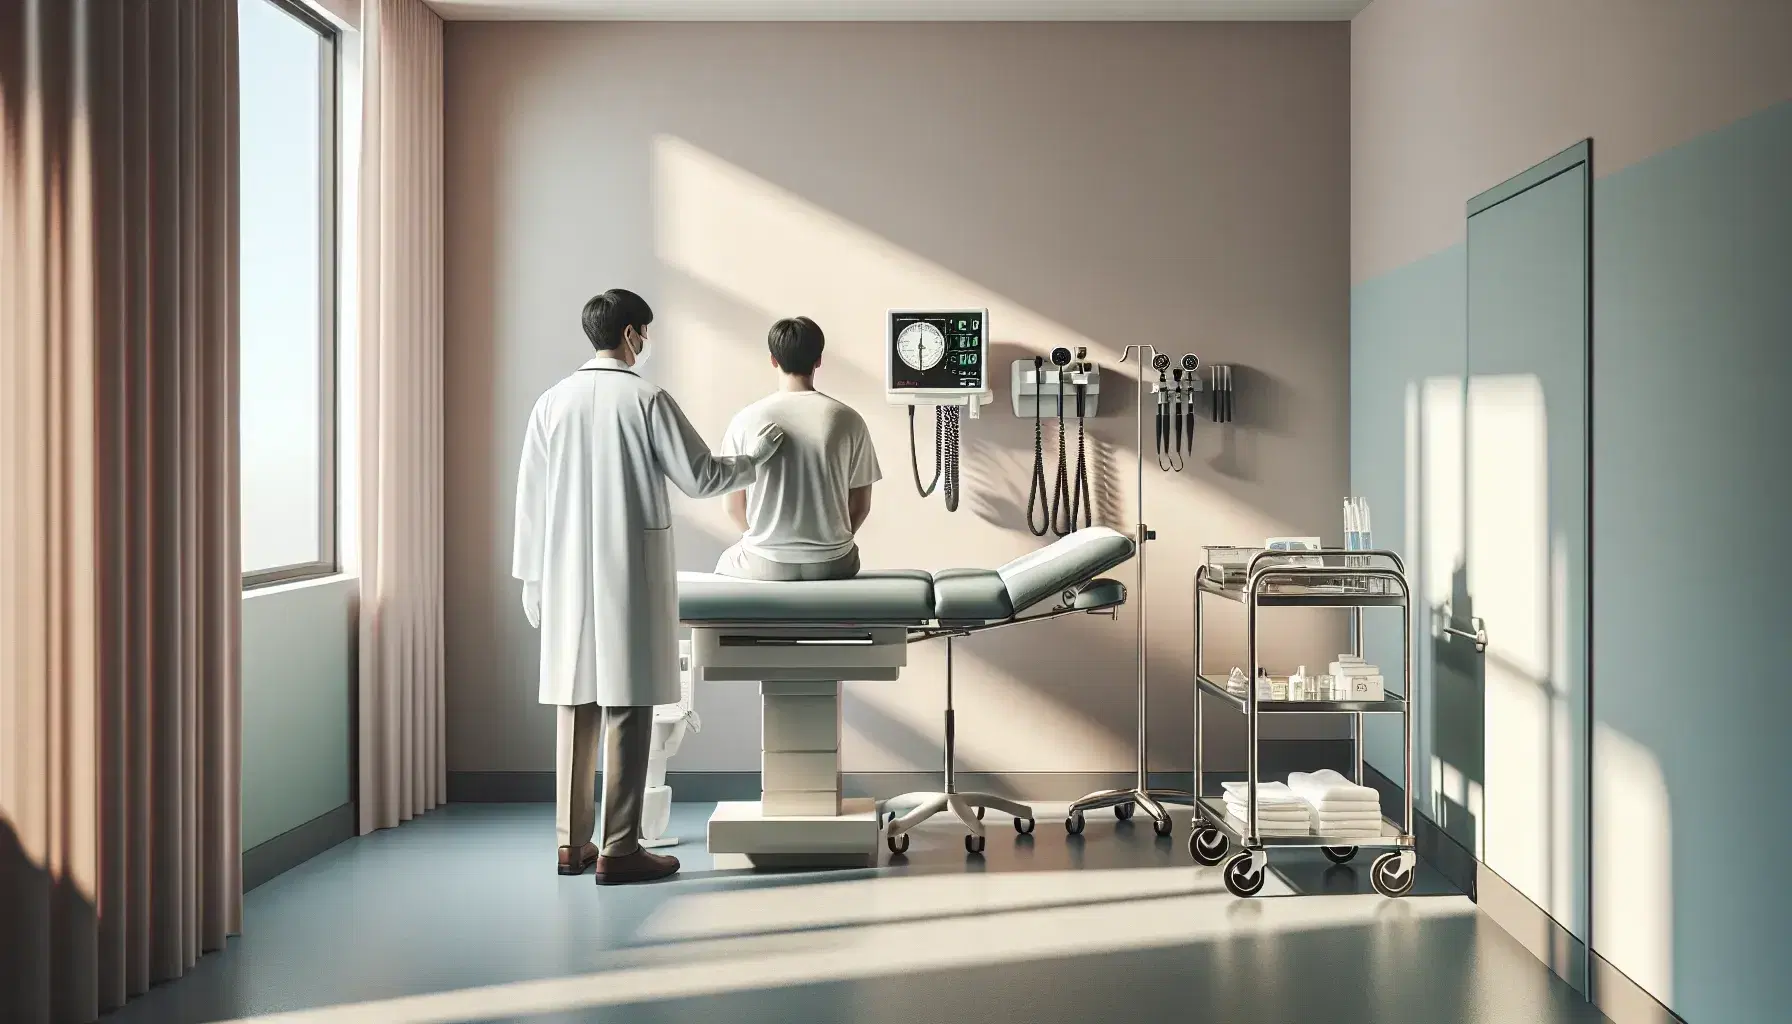 Consultorio médico con luz natural, mesa de exploración y doctor examinando paciente sentado, estetoscopio y esfigmomanómetro en la pared, carrito con instrumentos.